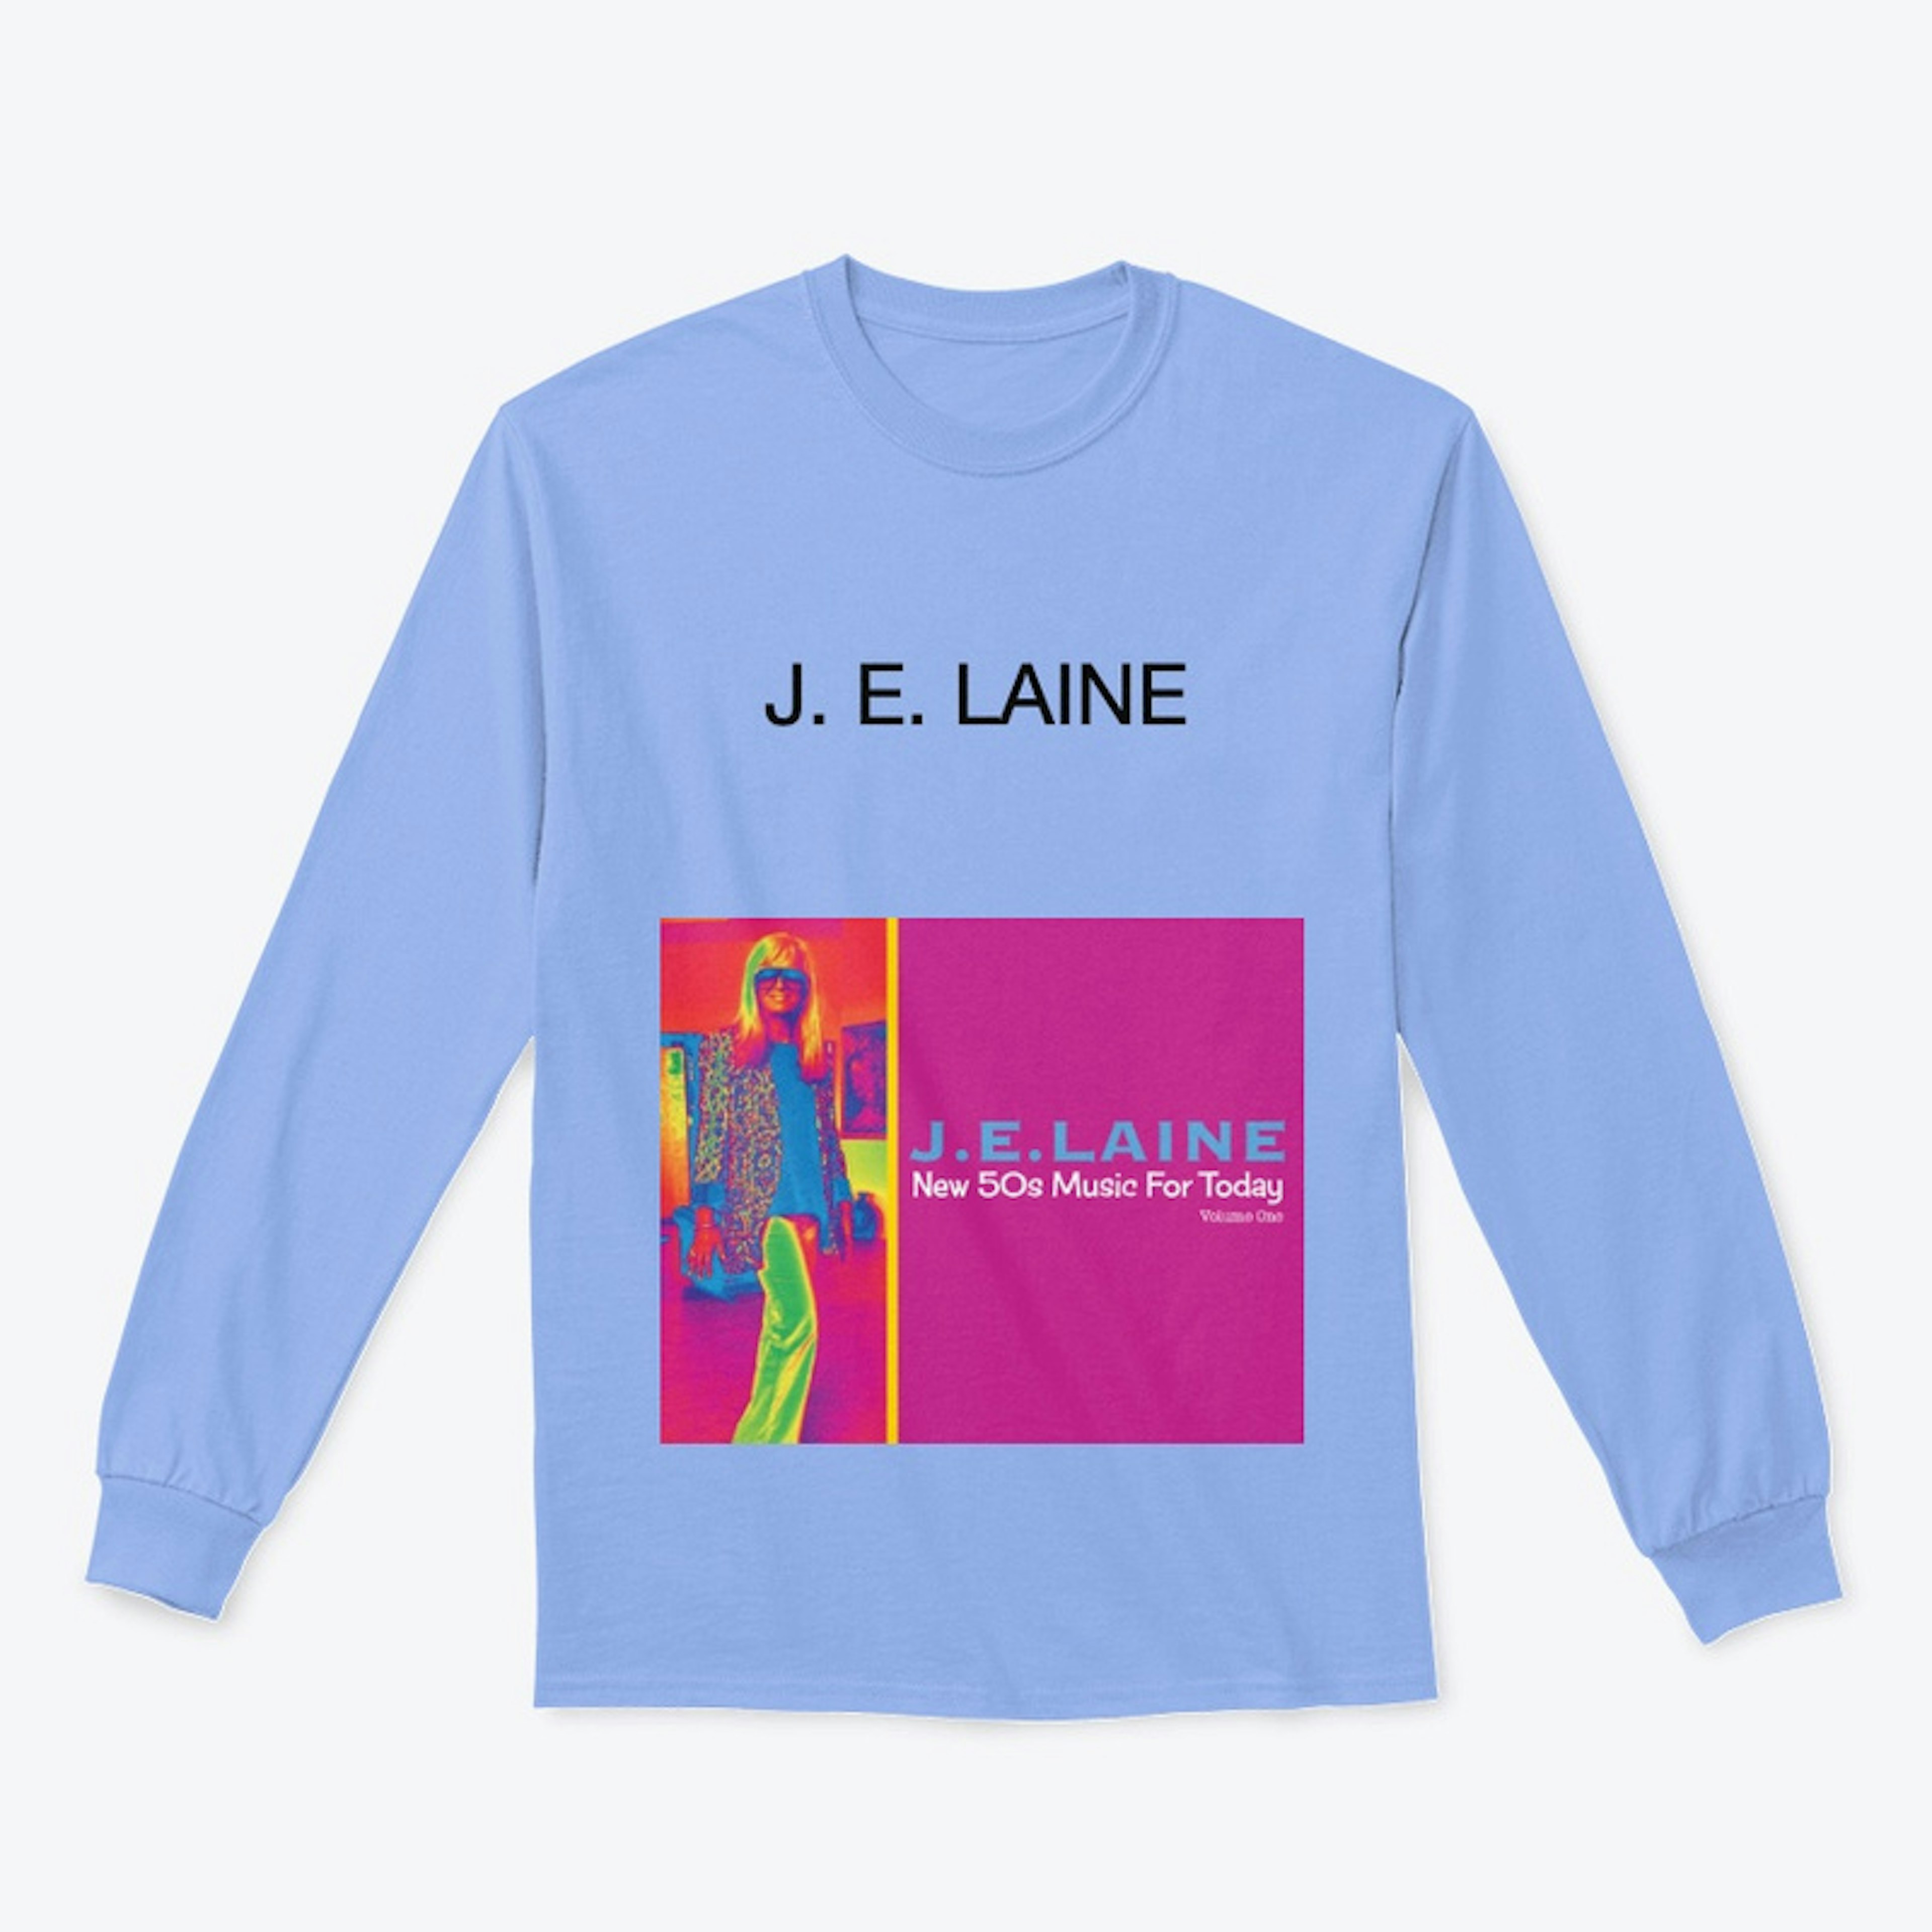 The J. E. LAINE Store